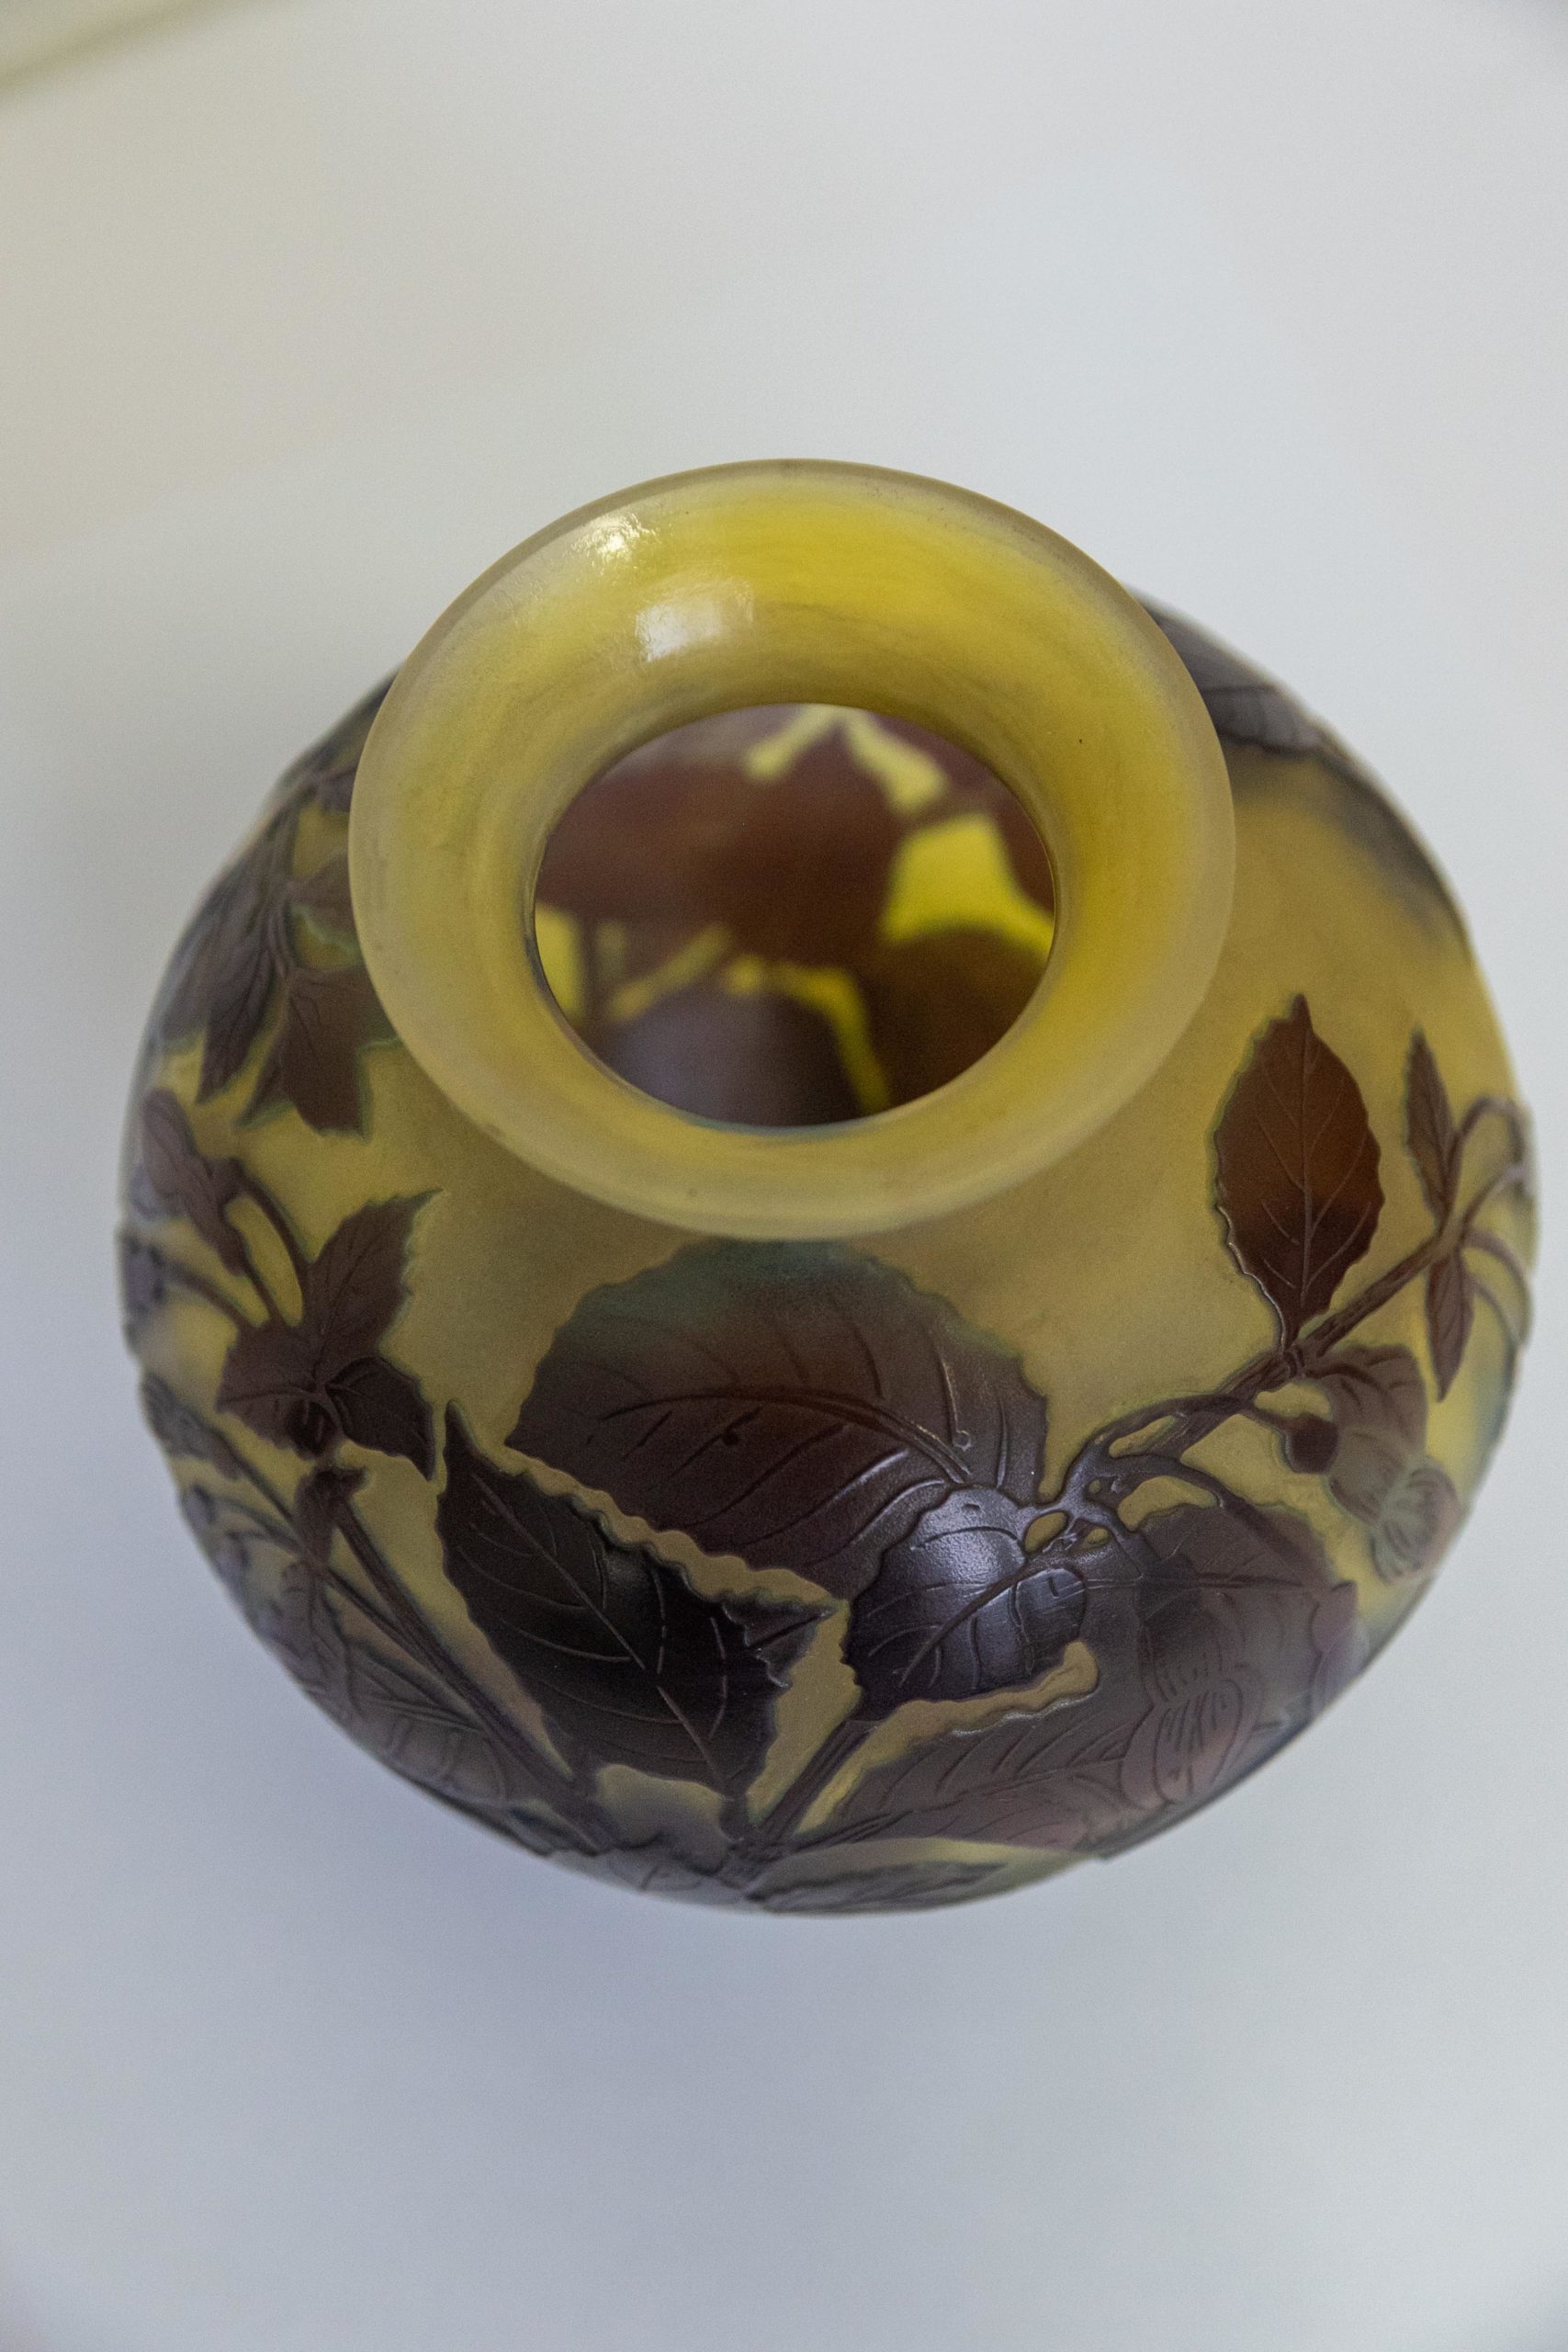 Vase-verrerie-nancy-art-nouveau-Emile-gallé-vase-gallé-authentique-signature-antiquaire-aurore-morisse-auroremorisse-affaire-conclue-liège-paris-antiquités3